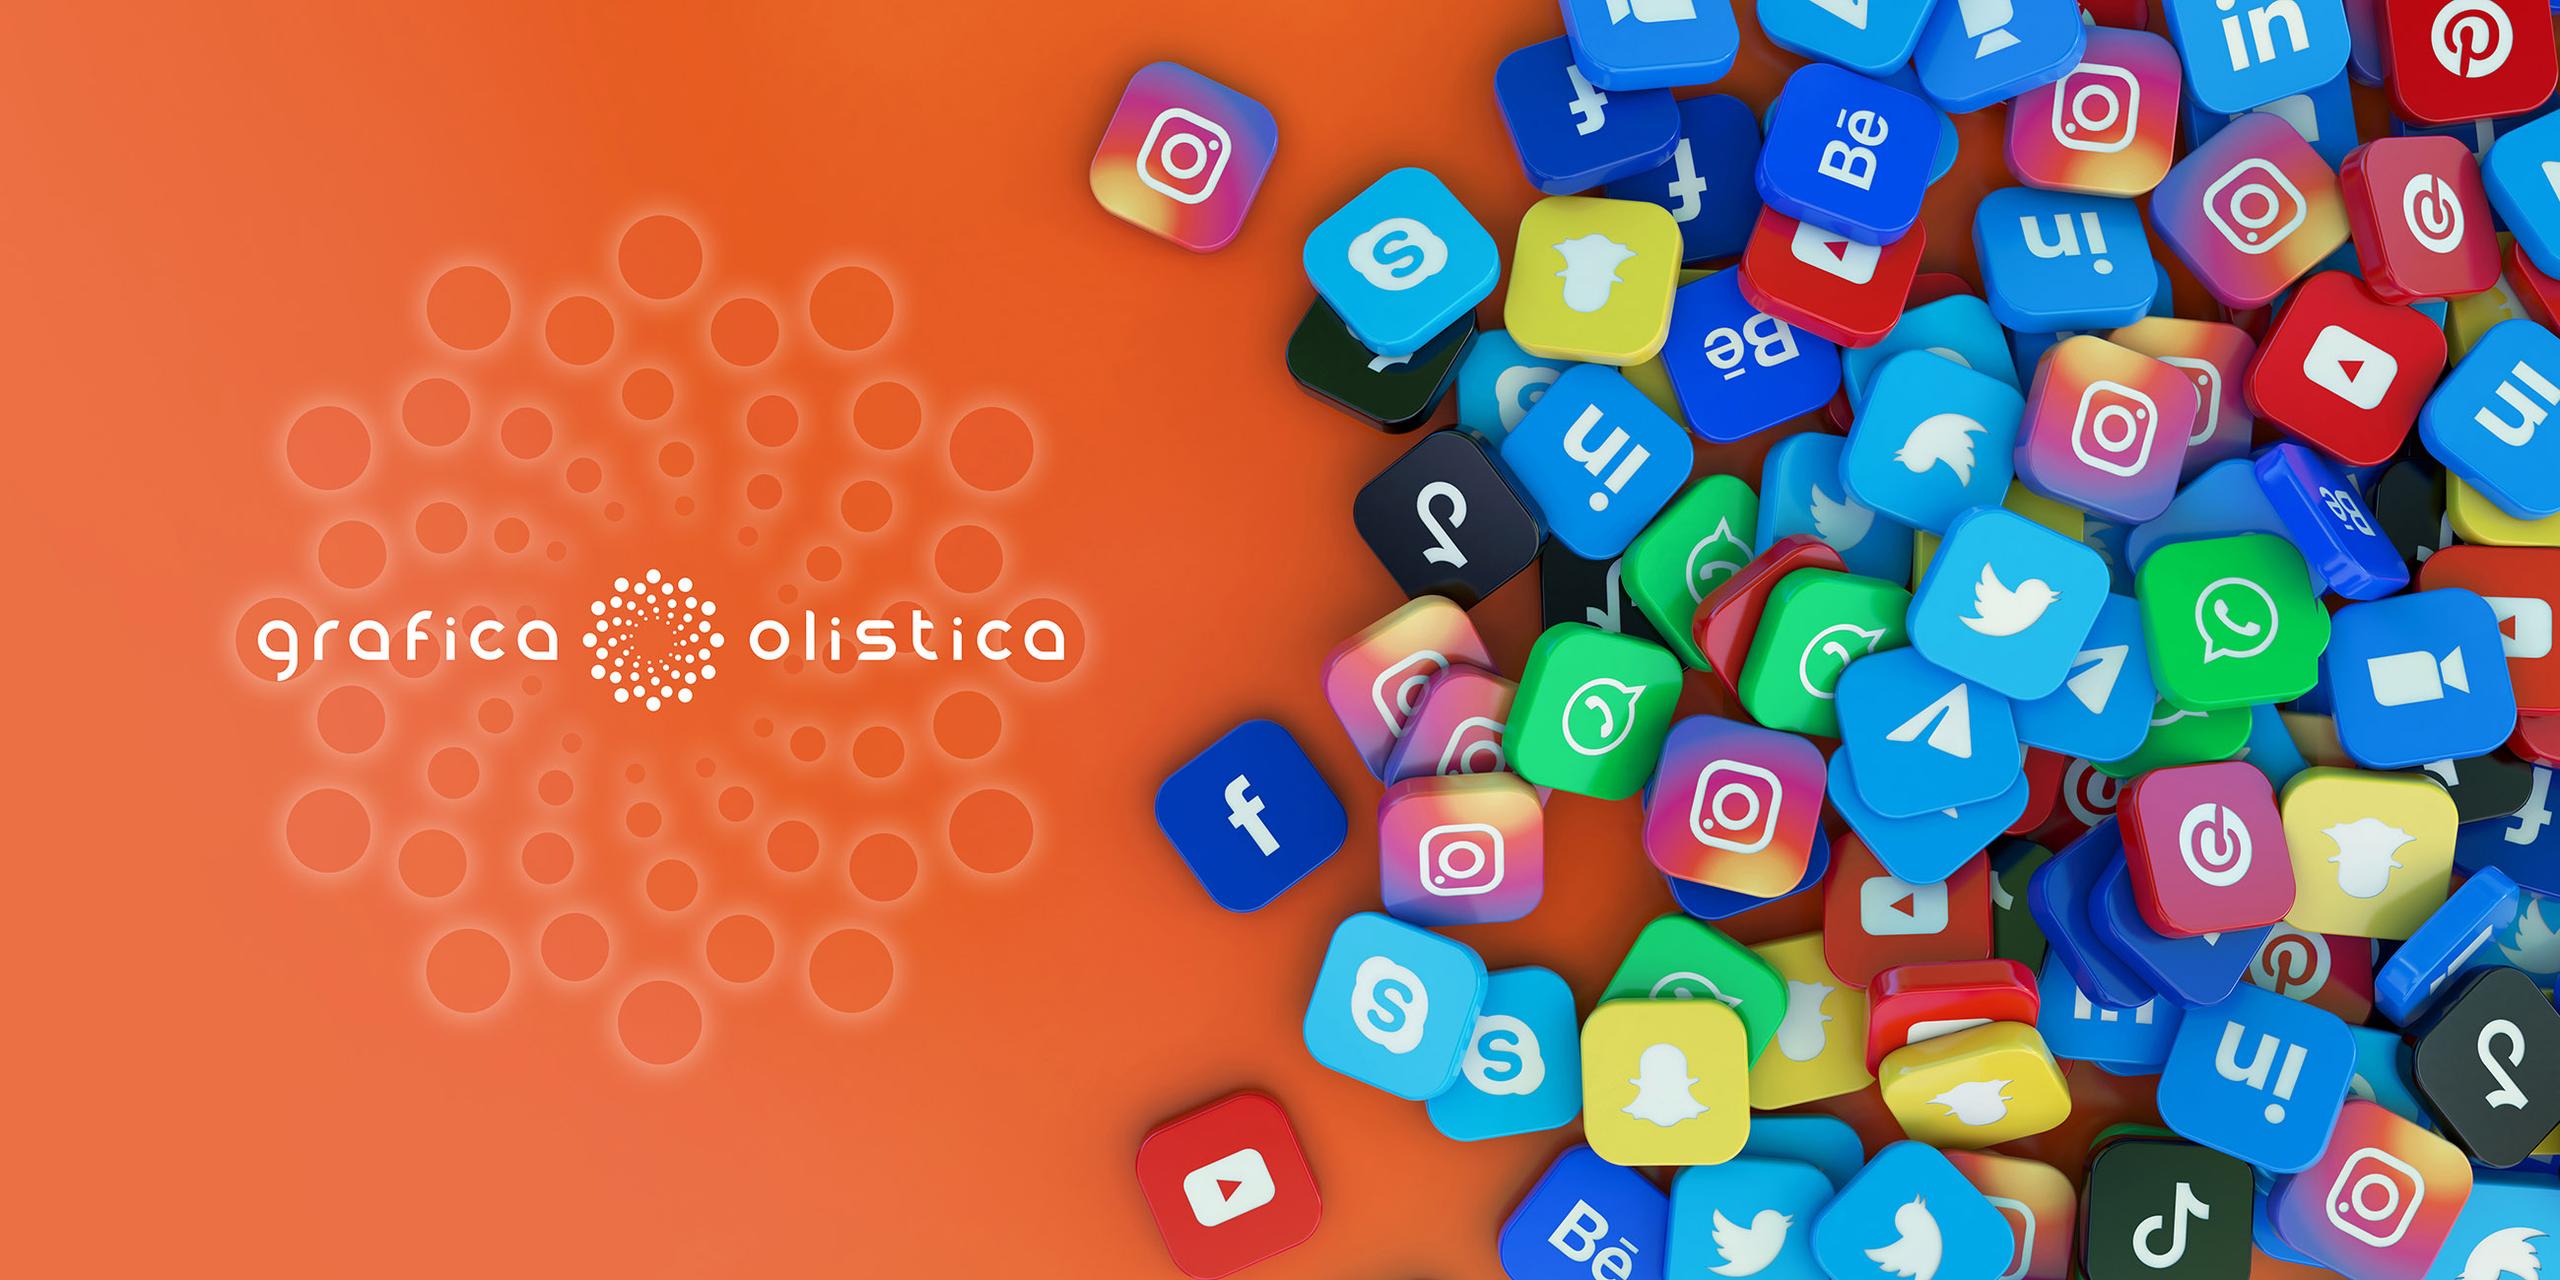 Quanti canali social è bene utilizzare se hai un’attività olistica?